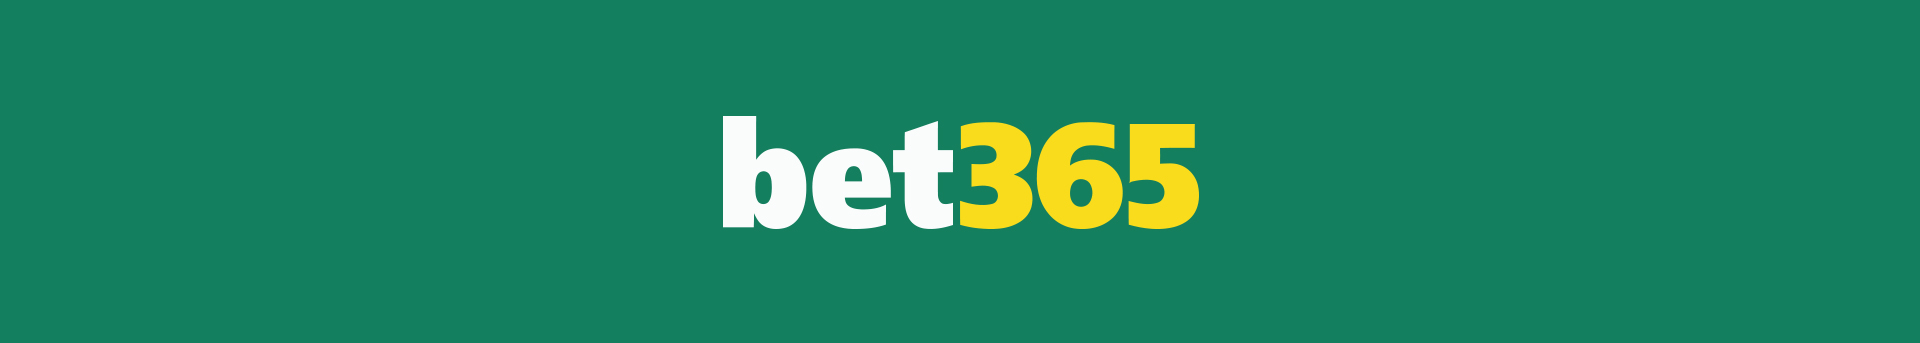 Paypal bet365 jugadores portugueses - 82213